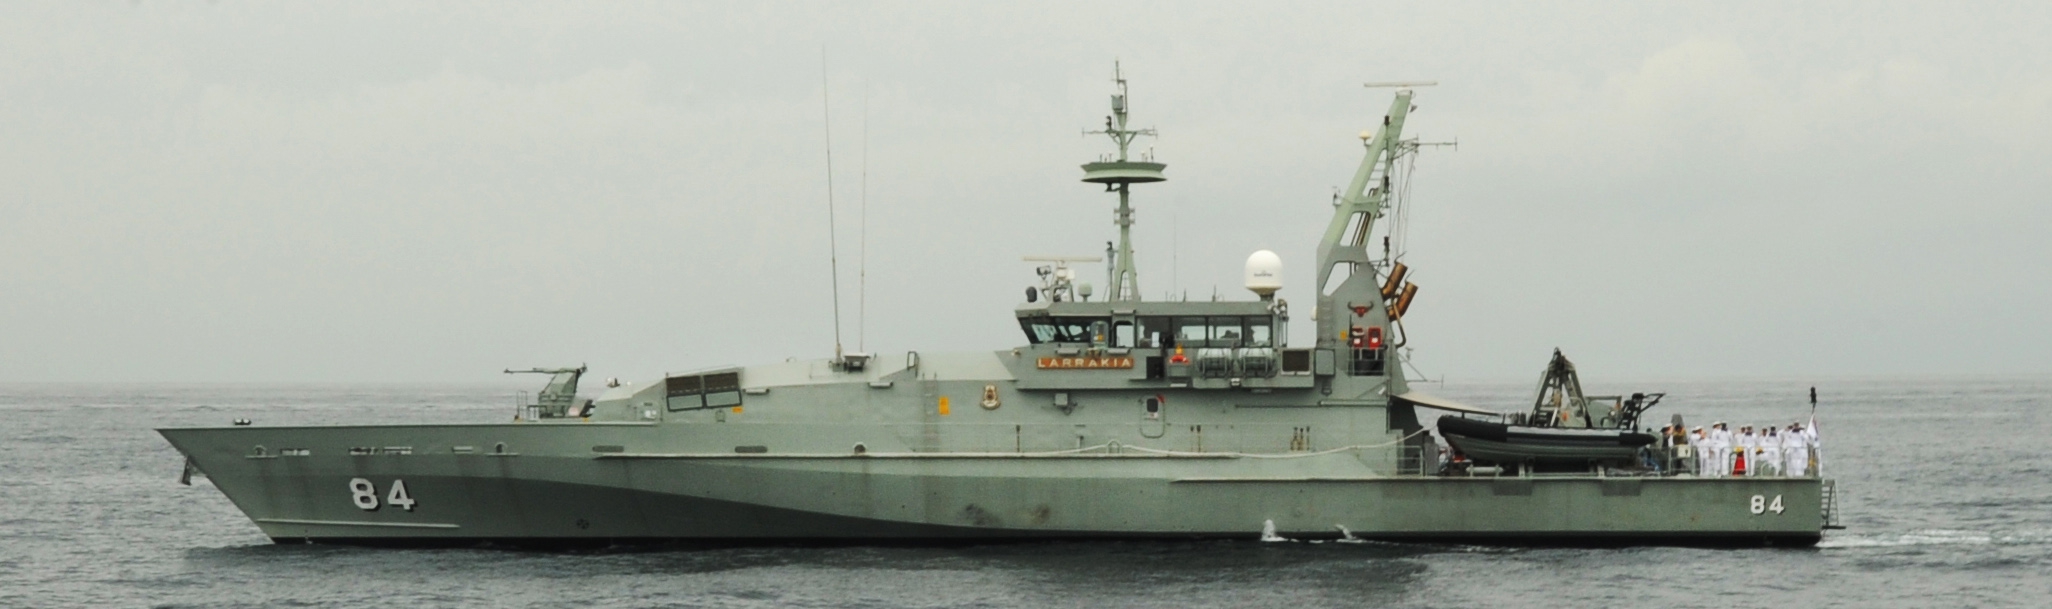 HMAS Larrakia (ACPB 84) #23